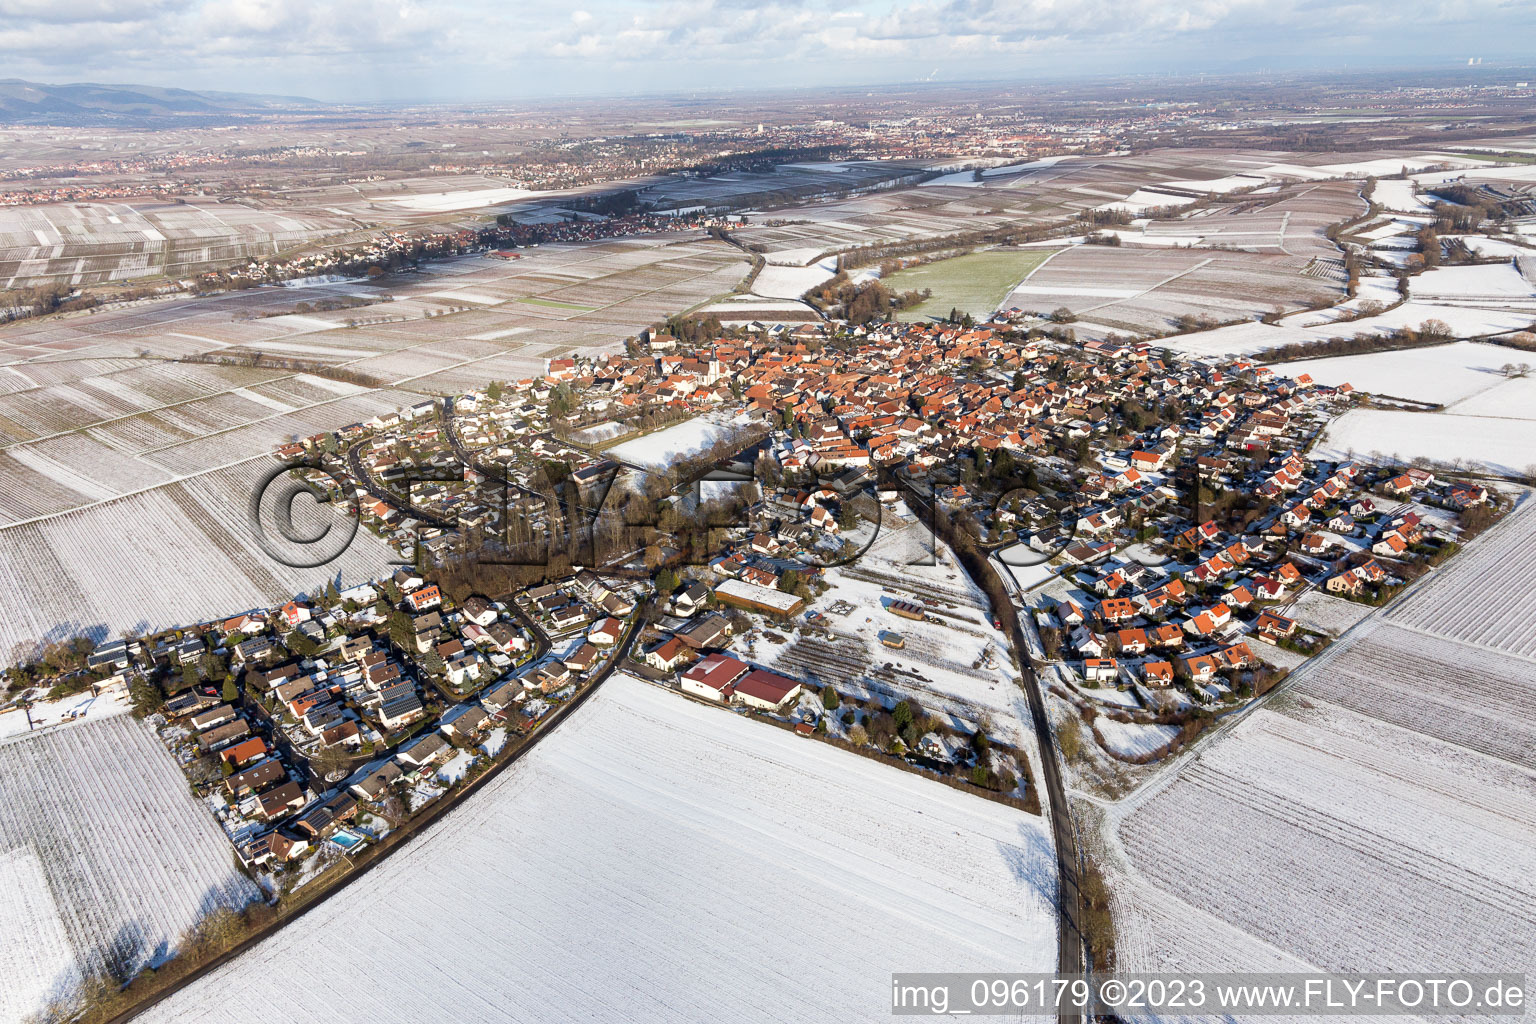 District Mörzheim in Landau in der Pfalz in the state Rhineland-Palatinate, Germany seen from above